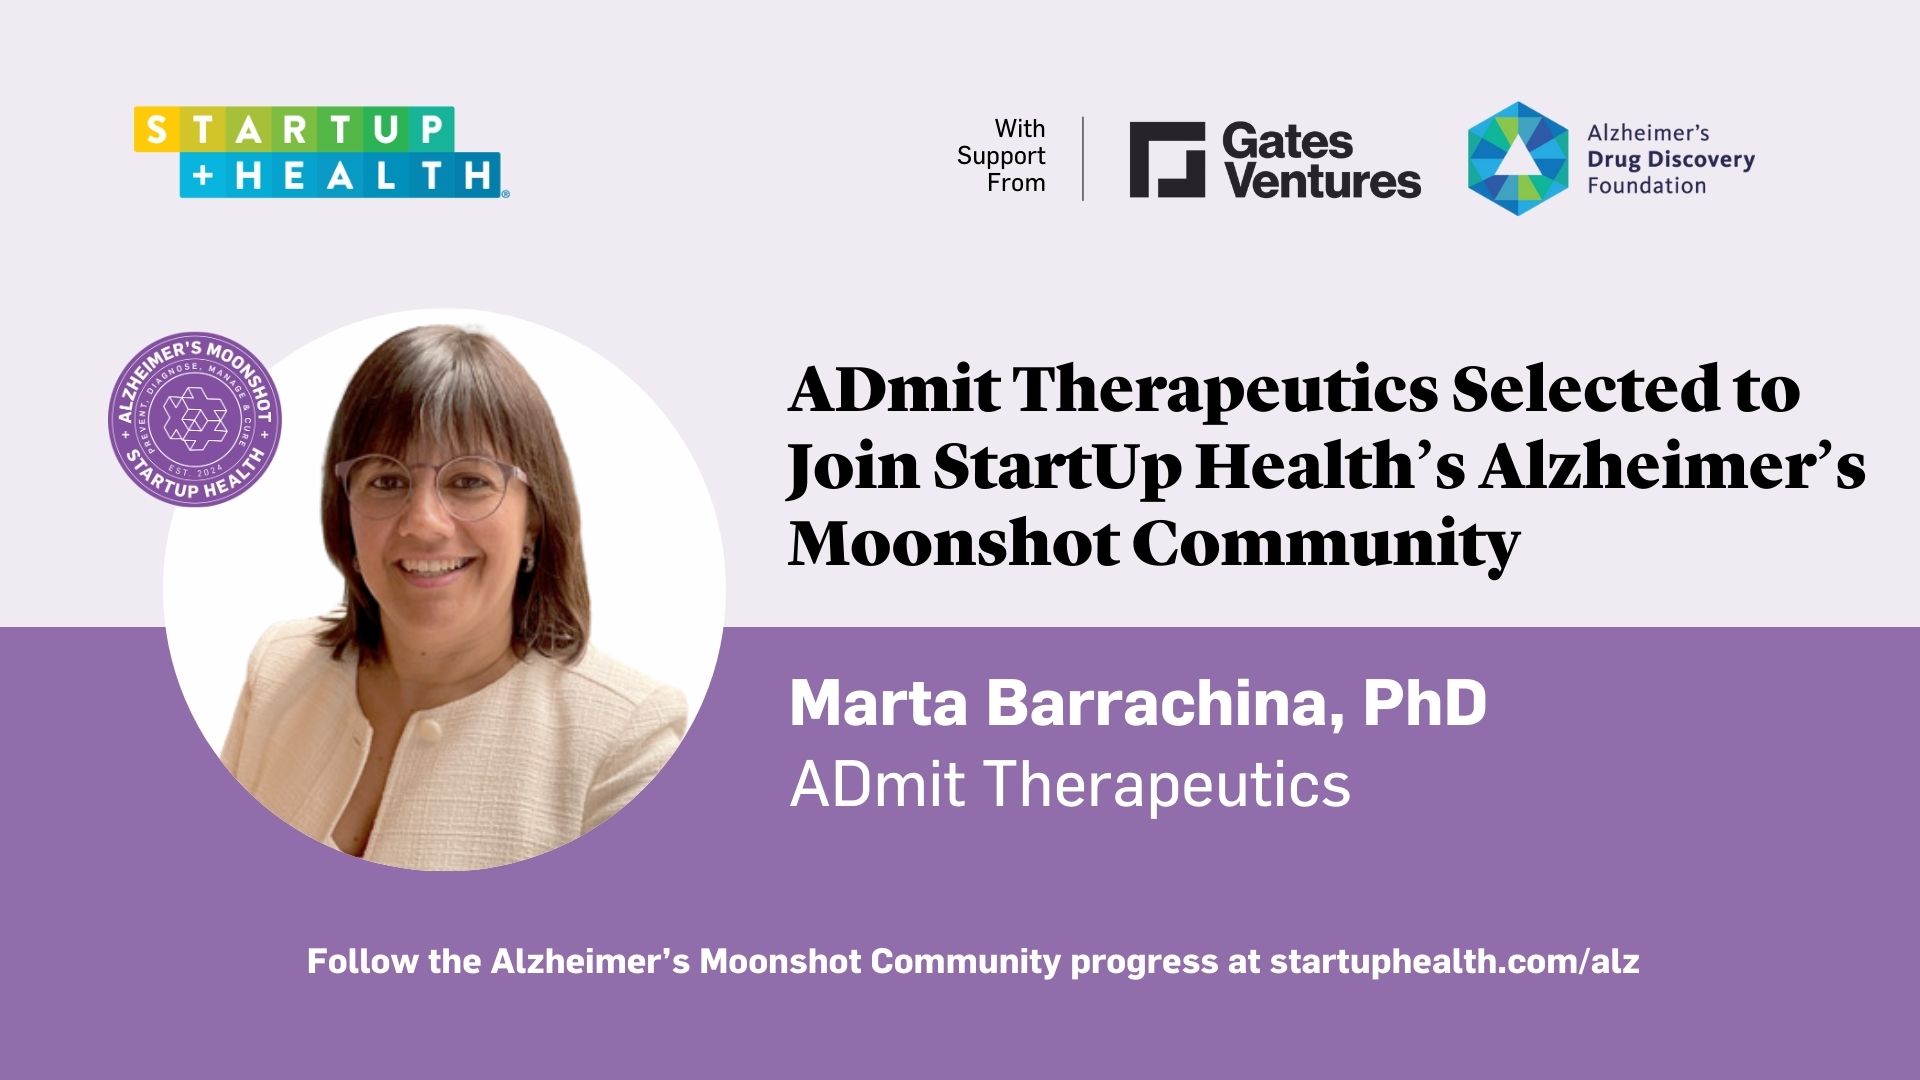 ADmit Therapeutics ha sido seleccionada para formar parte de la Comunidad Alzheimer's Moonshot de StartUp Health